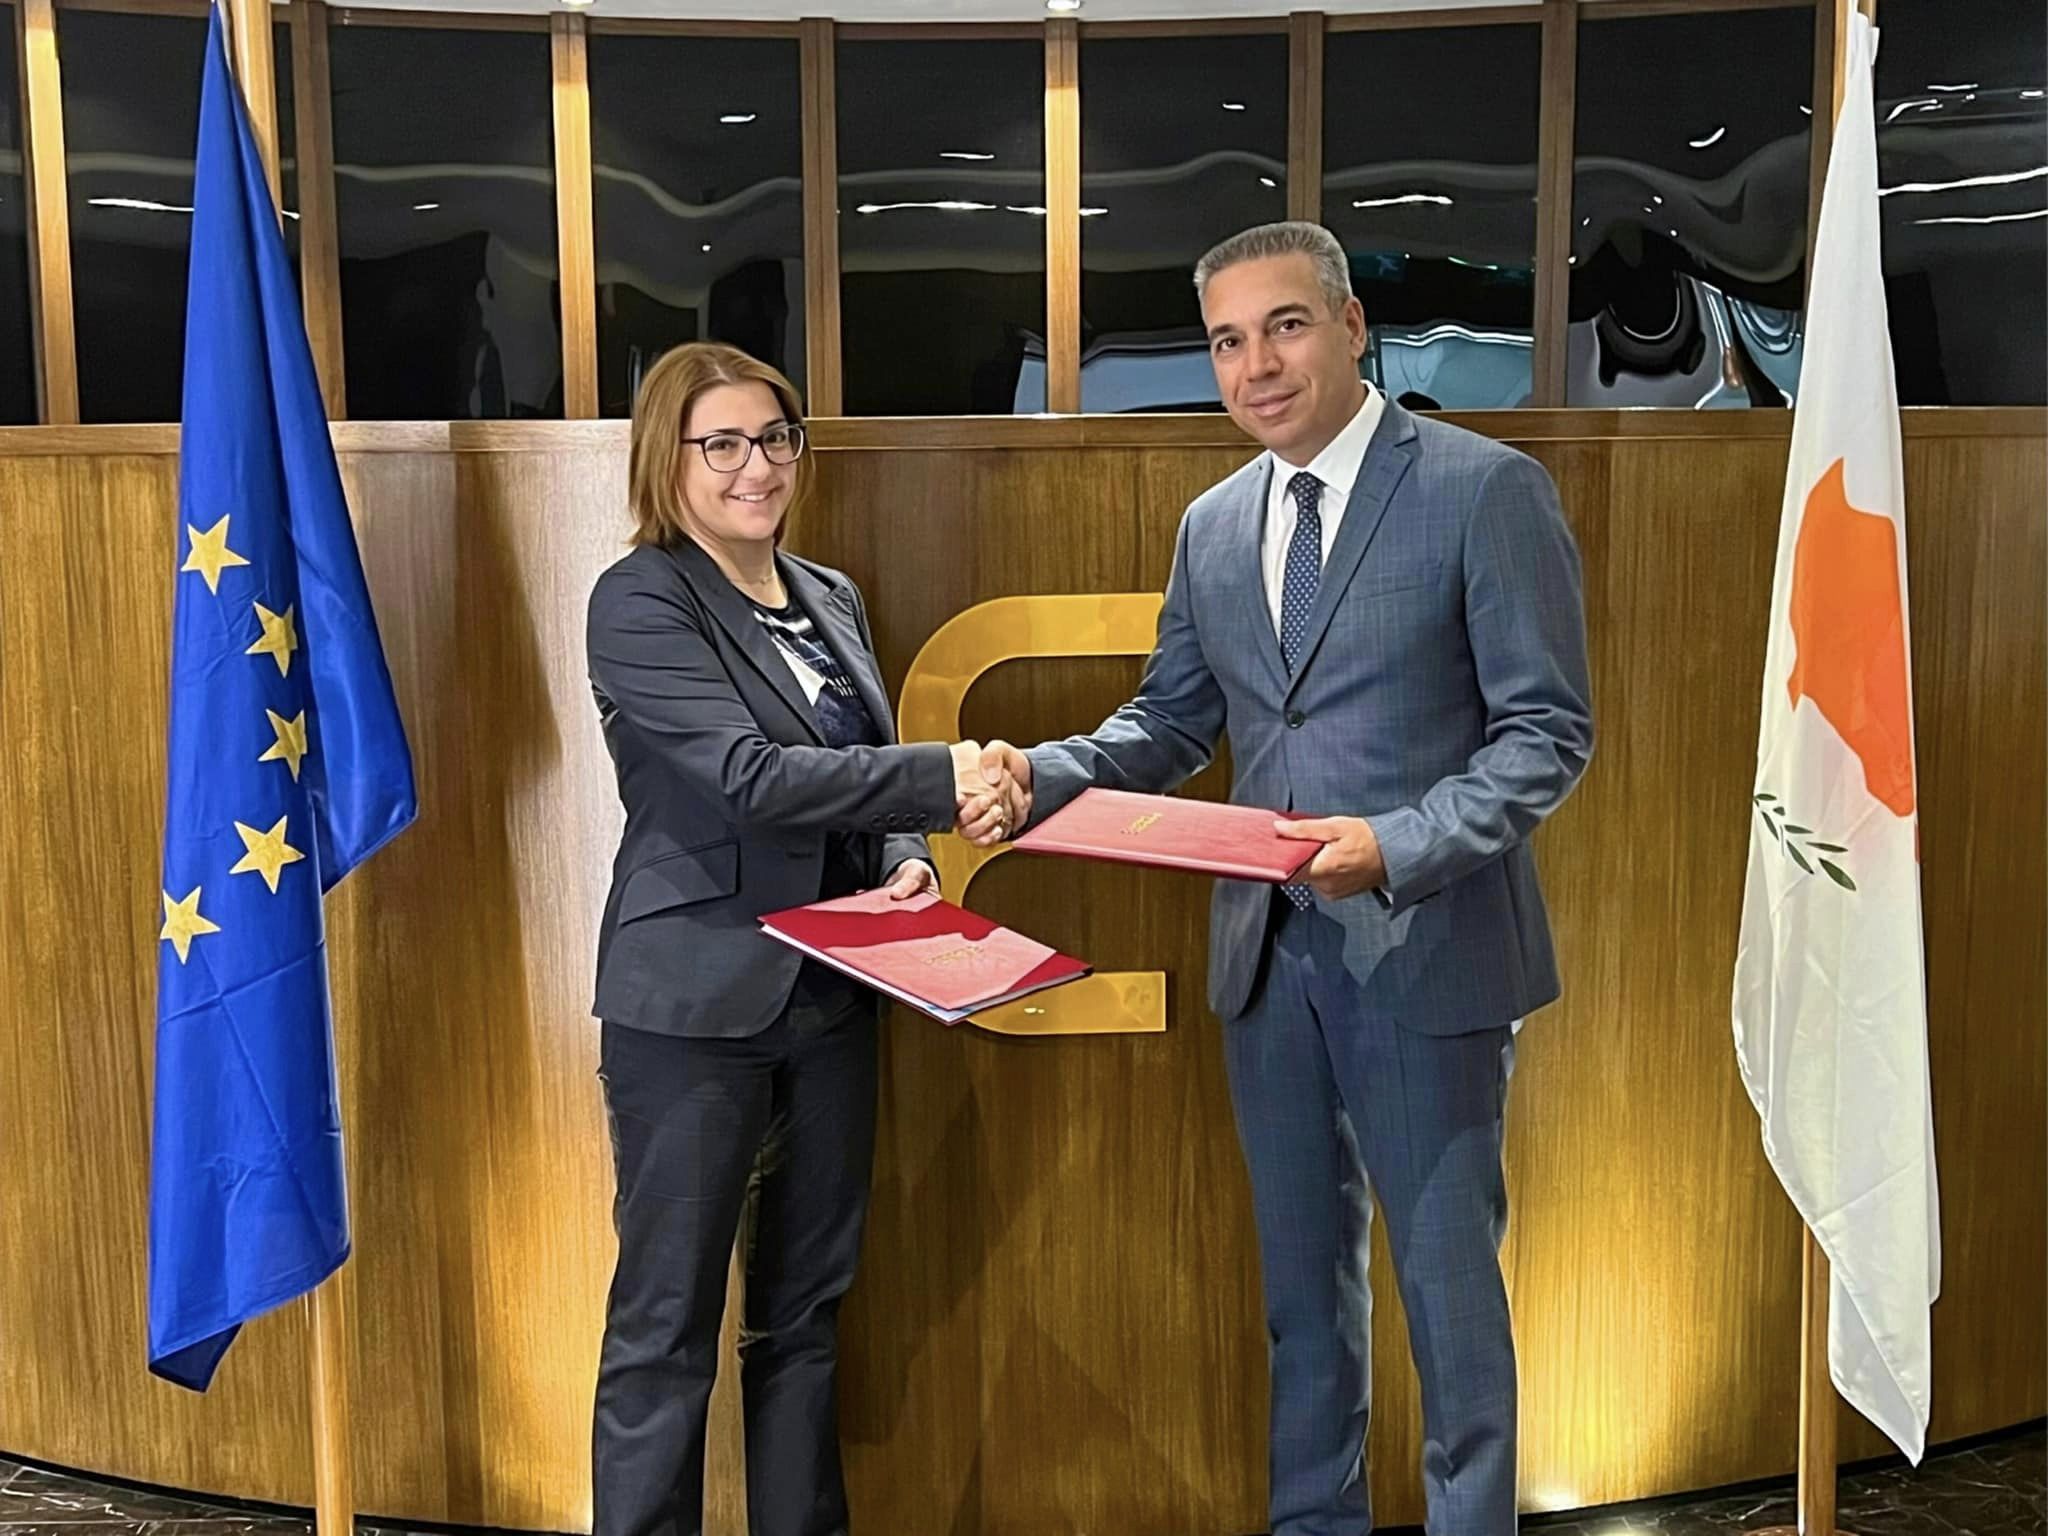 Υπογραφή Μνημονίου Συνεργασίας μεταξύ της Επιτρόπου Προστασίας Δεδομένων Προσωπικού Χαρακτήρα (ΕΠΔΠΧ) και του Επιτρόπου Επικοινωνιών (ΕΕ)